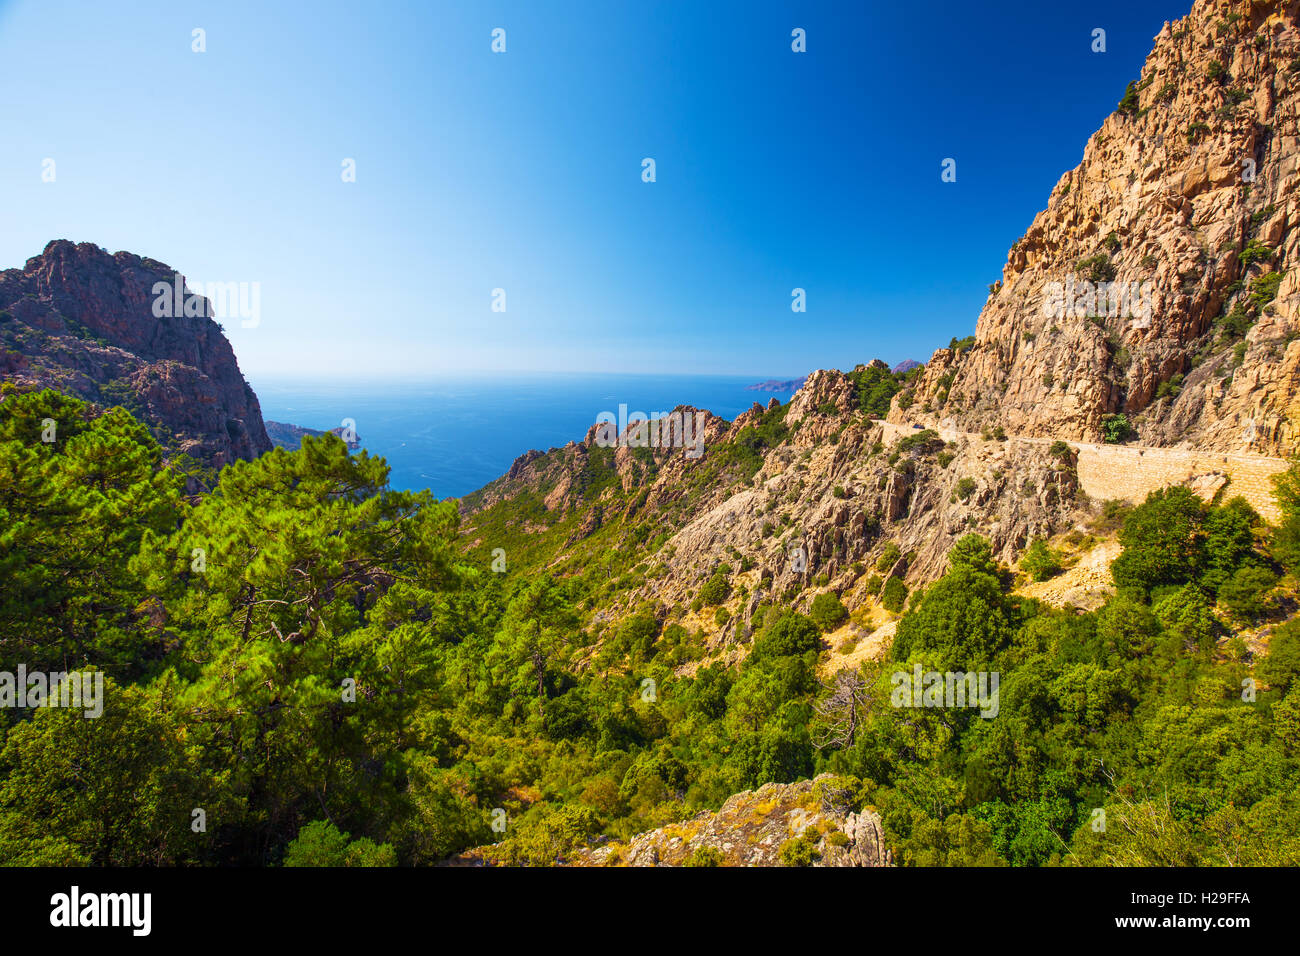 Magnifique paysage de D81 route à travers les Calanques de Piana sur la côte ouest de la Corse, France, Europe. Banque D'Images